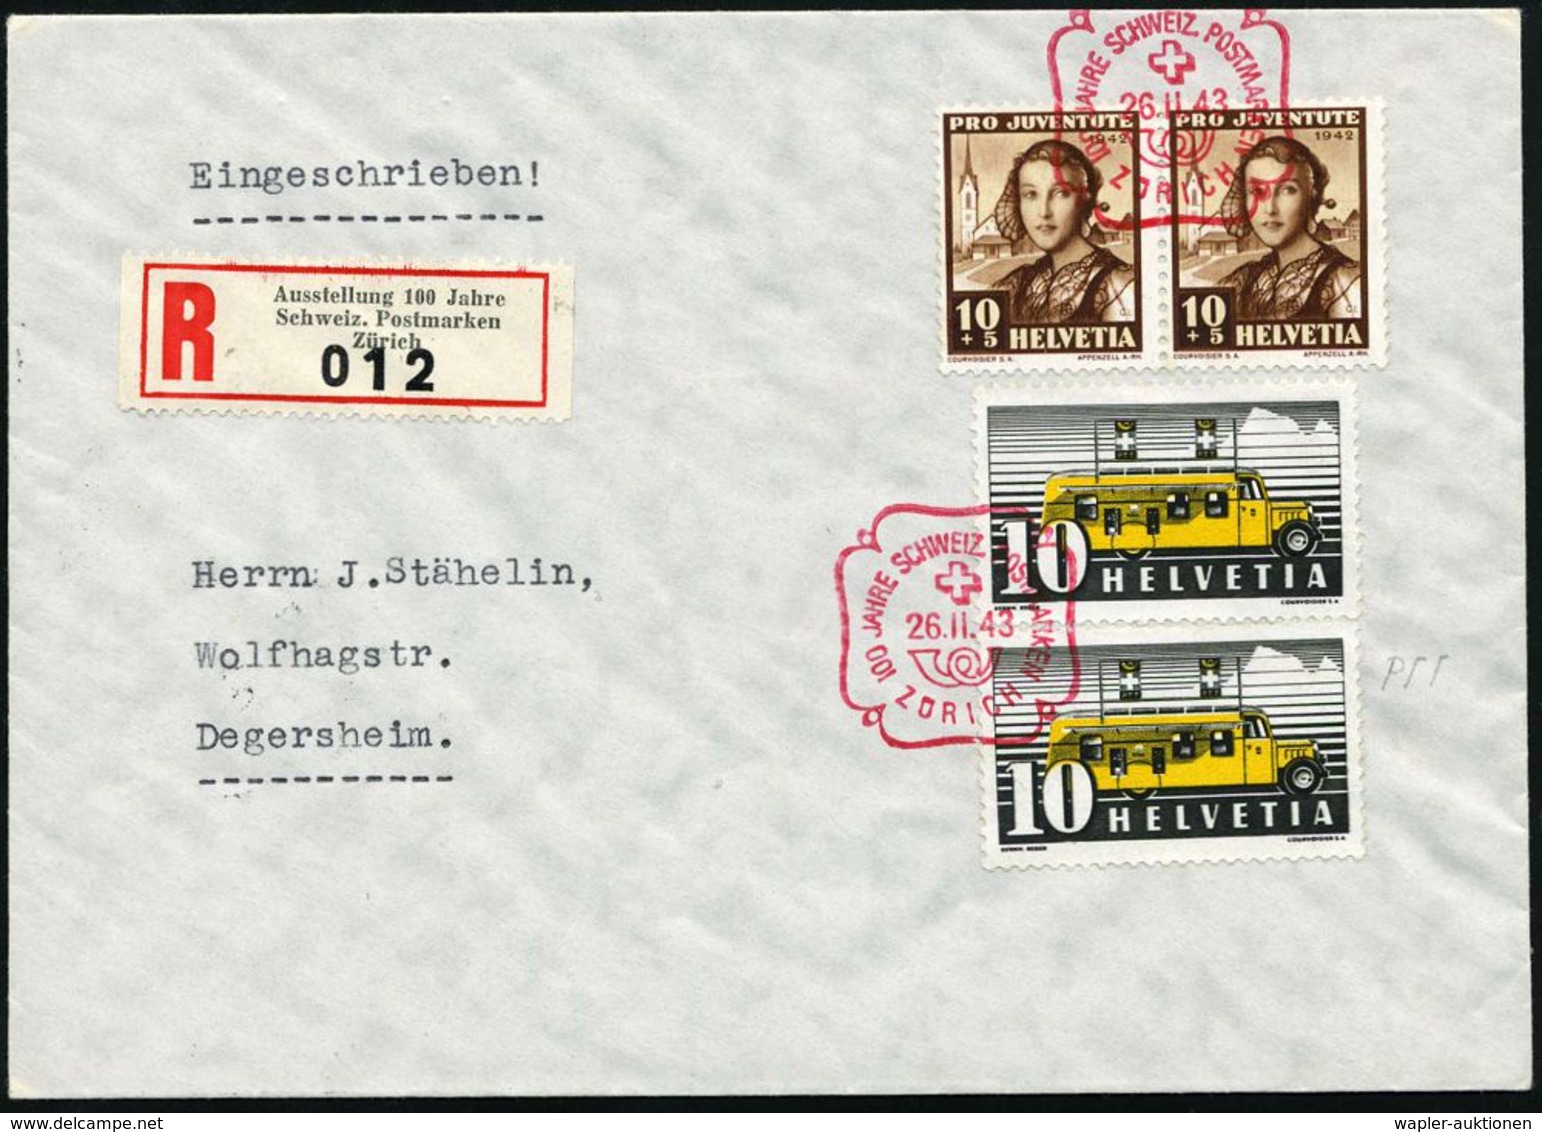 SCHWEIZ 1943 (26.2.) Roter SSt: ZÜRICH/100 JAHRE SCHWEIZ. POSTMARKEN + Sonder-RZ: Ausstellung 100 Jahre/ Schweiz. Postma - Briefmarkenausstellungen